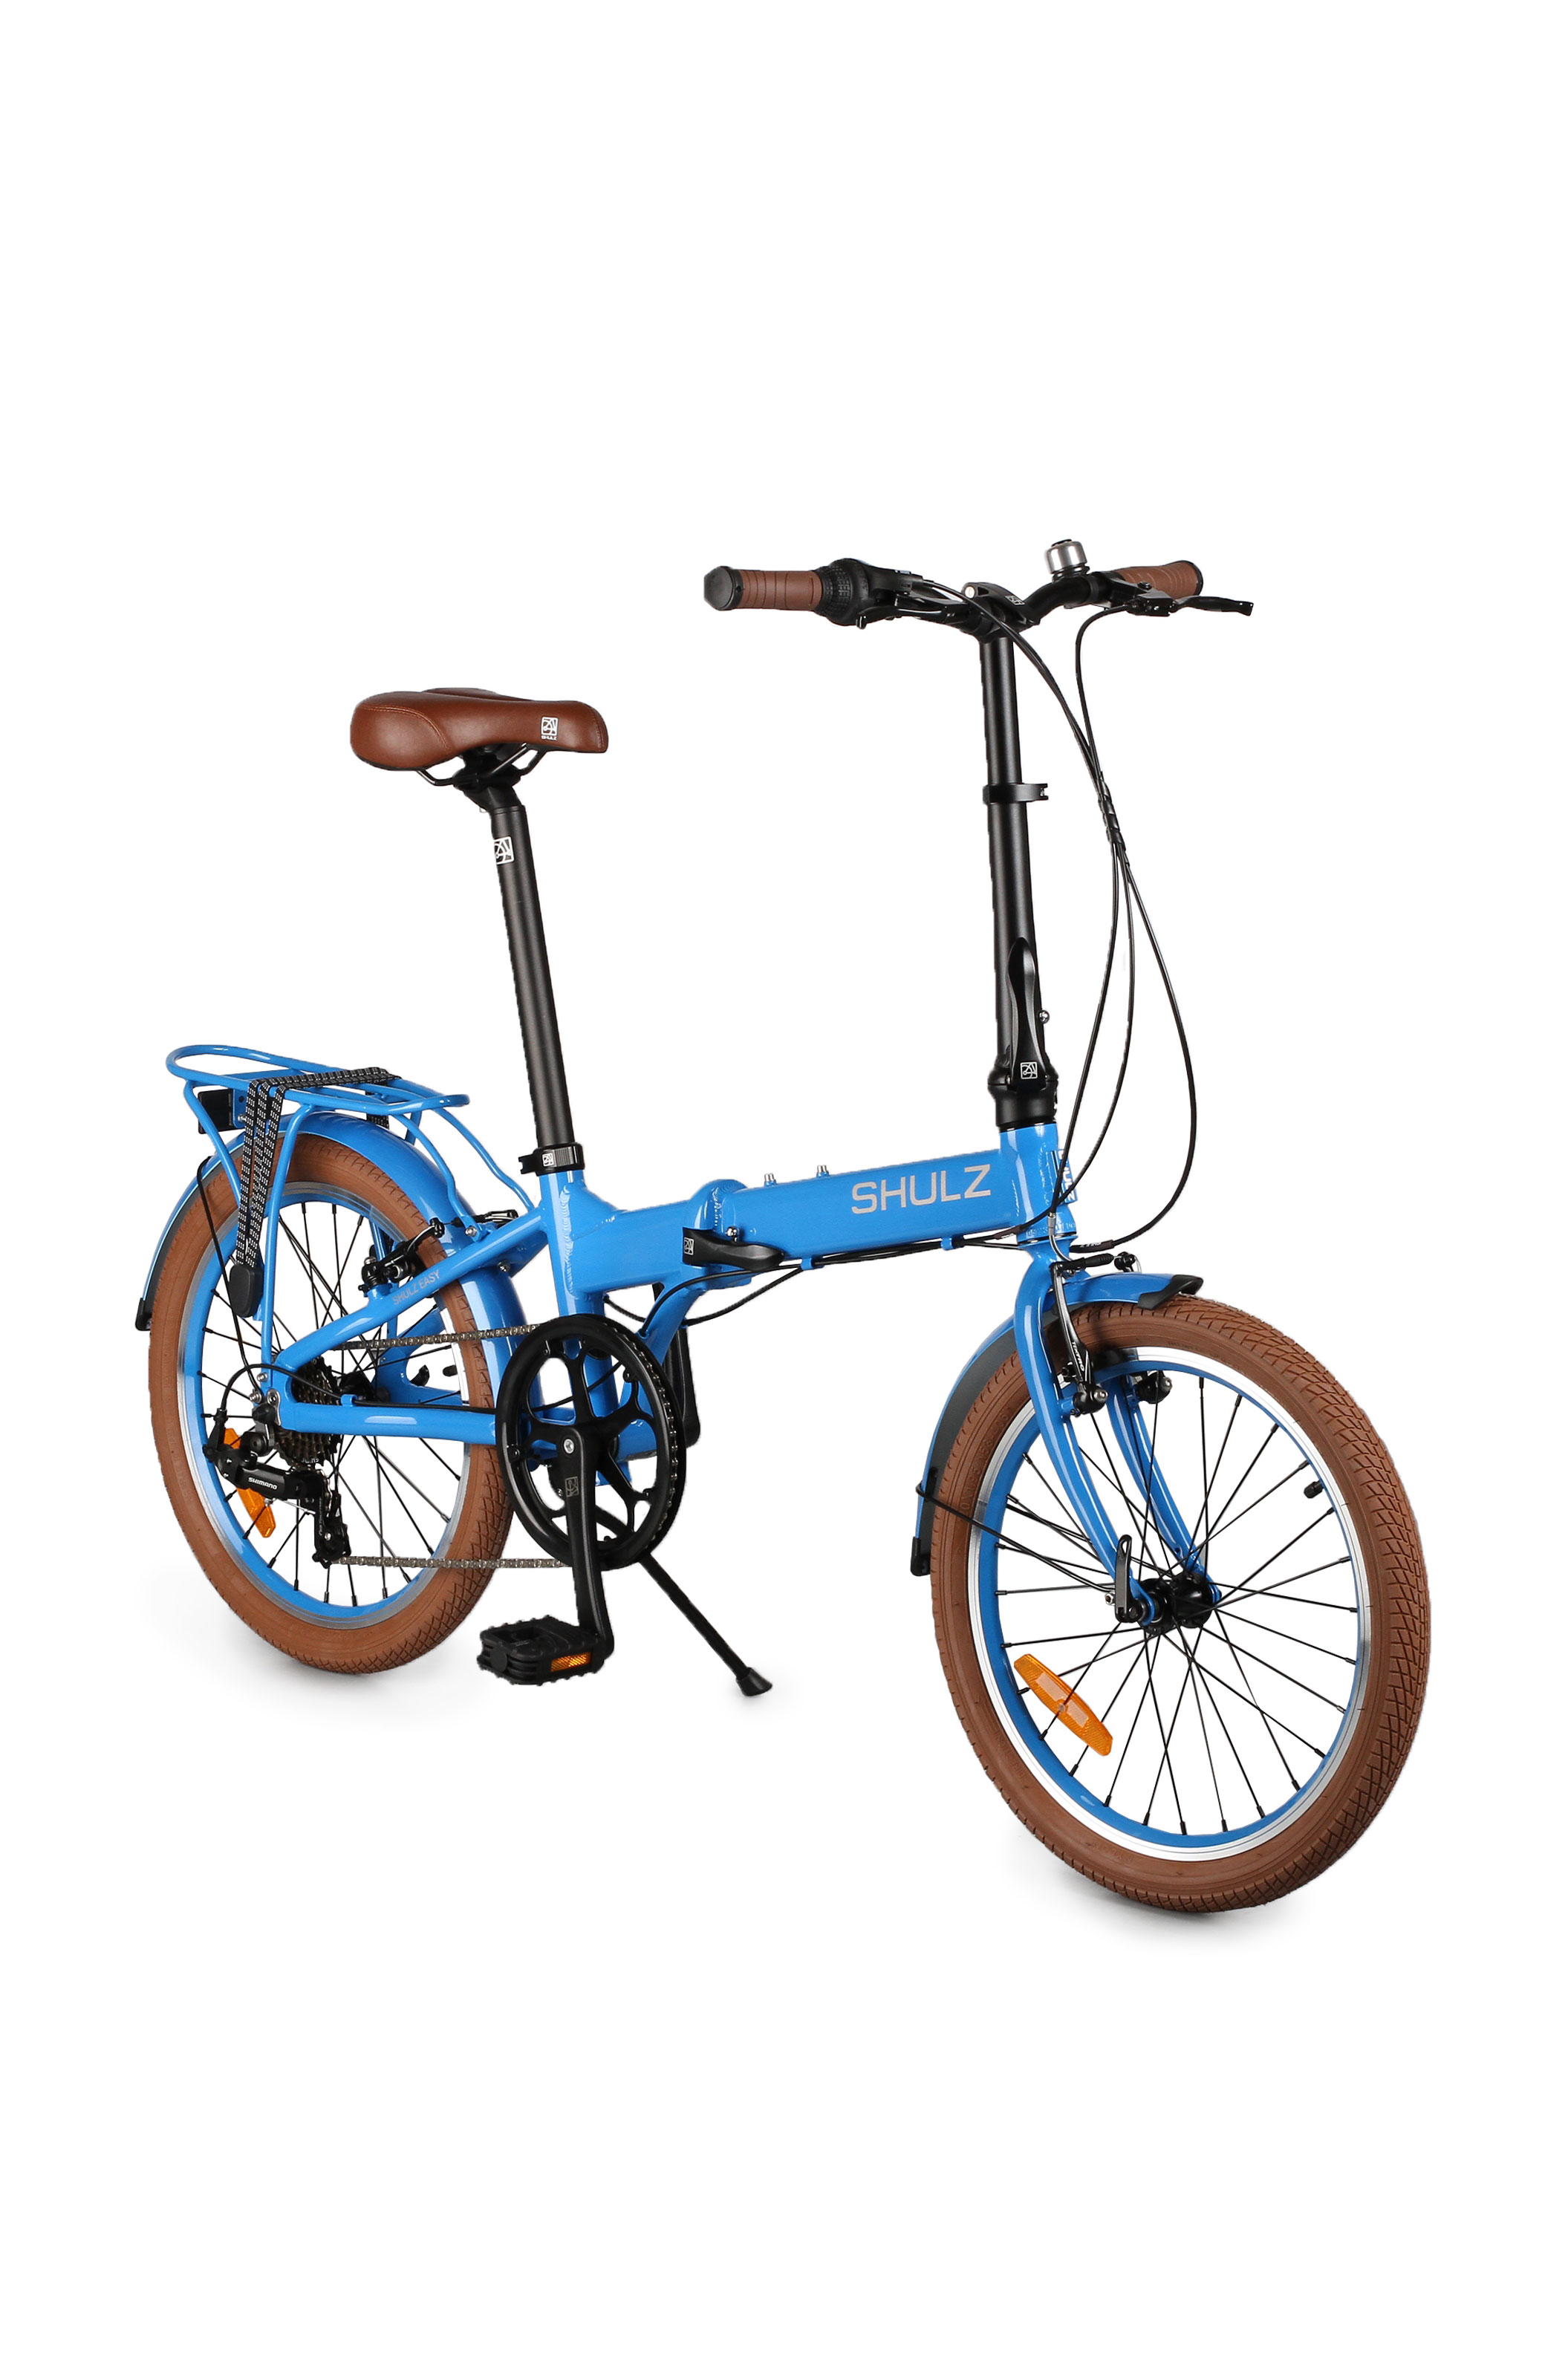 Складной велосипед шульц купить. Складной велосипед Shulz easy Disk. Городской велосипед Shulz. Велосипед Shulz easy 8. Велосипед городской Shulz 28.